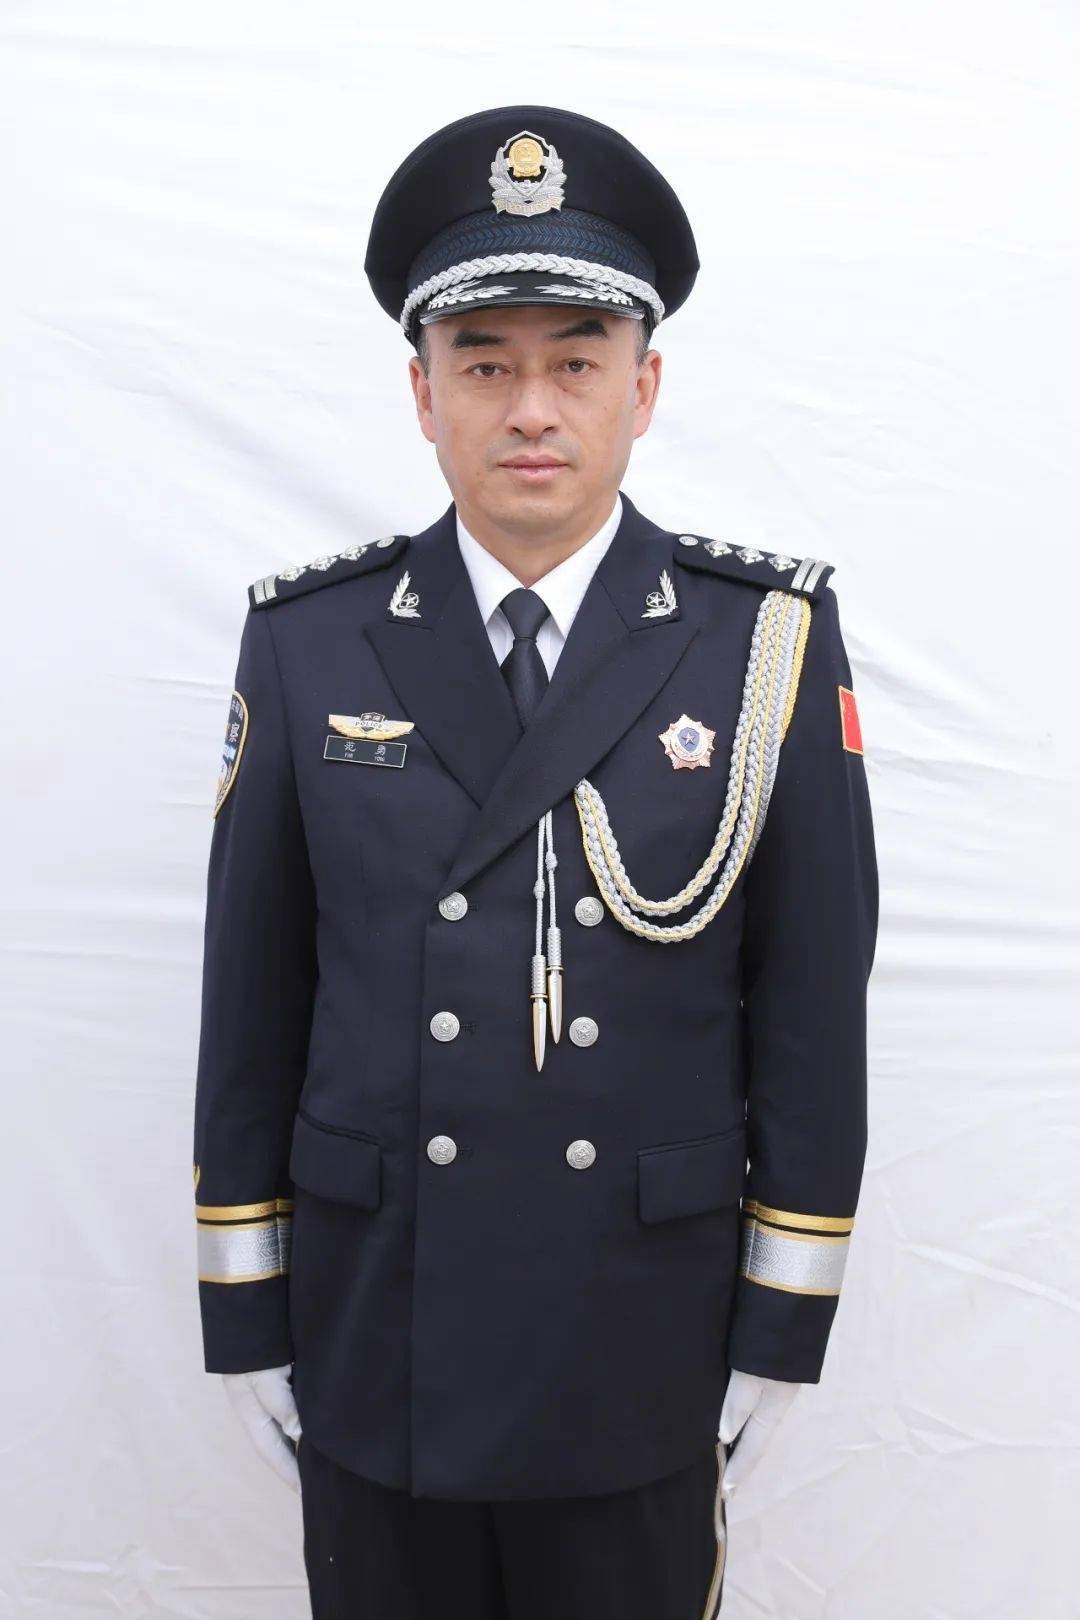 中国警察图片警服图片